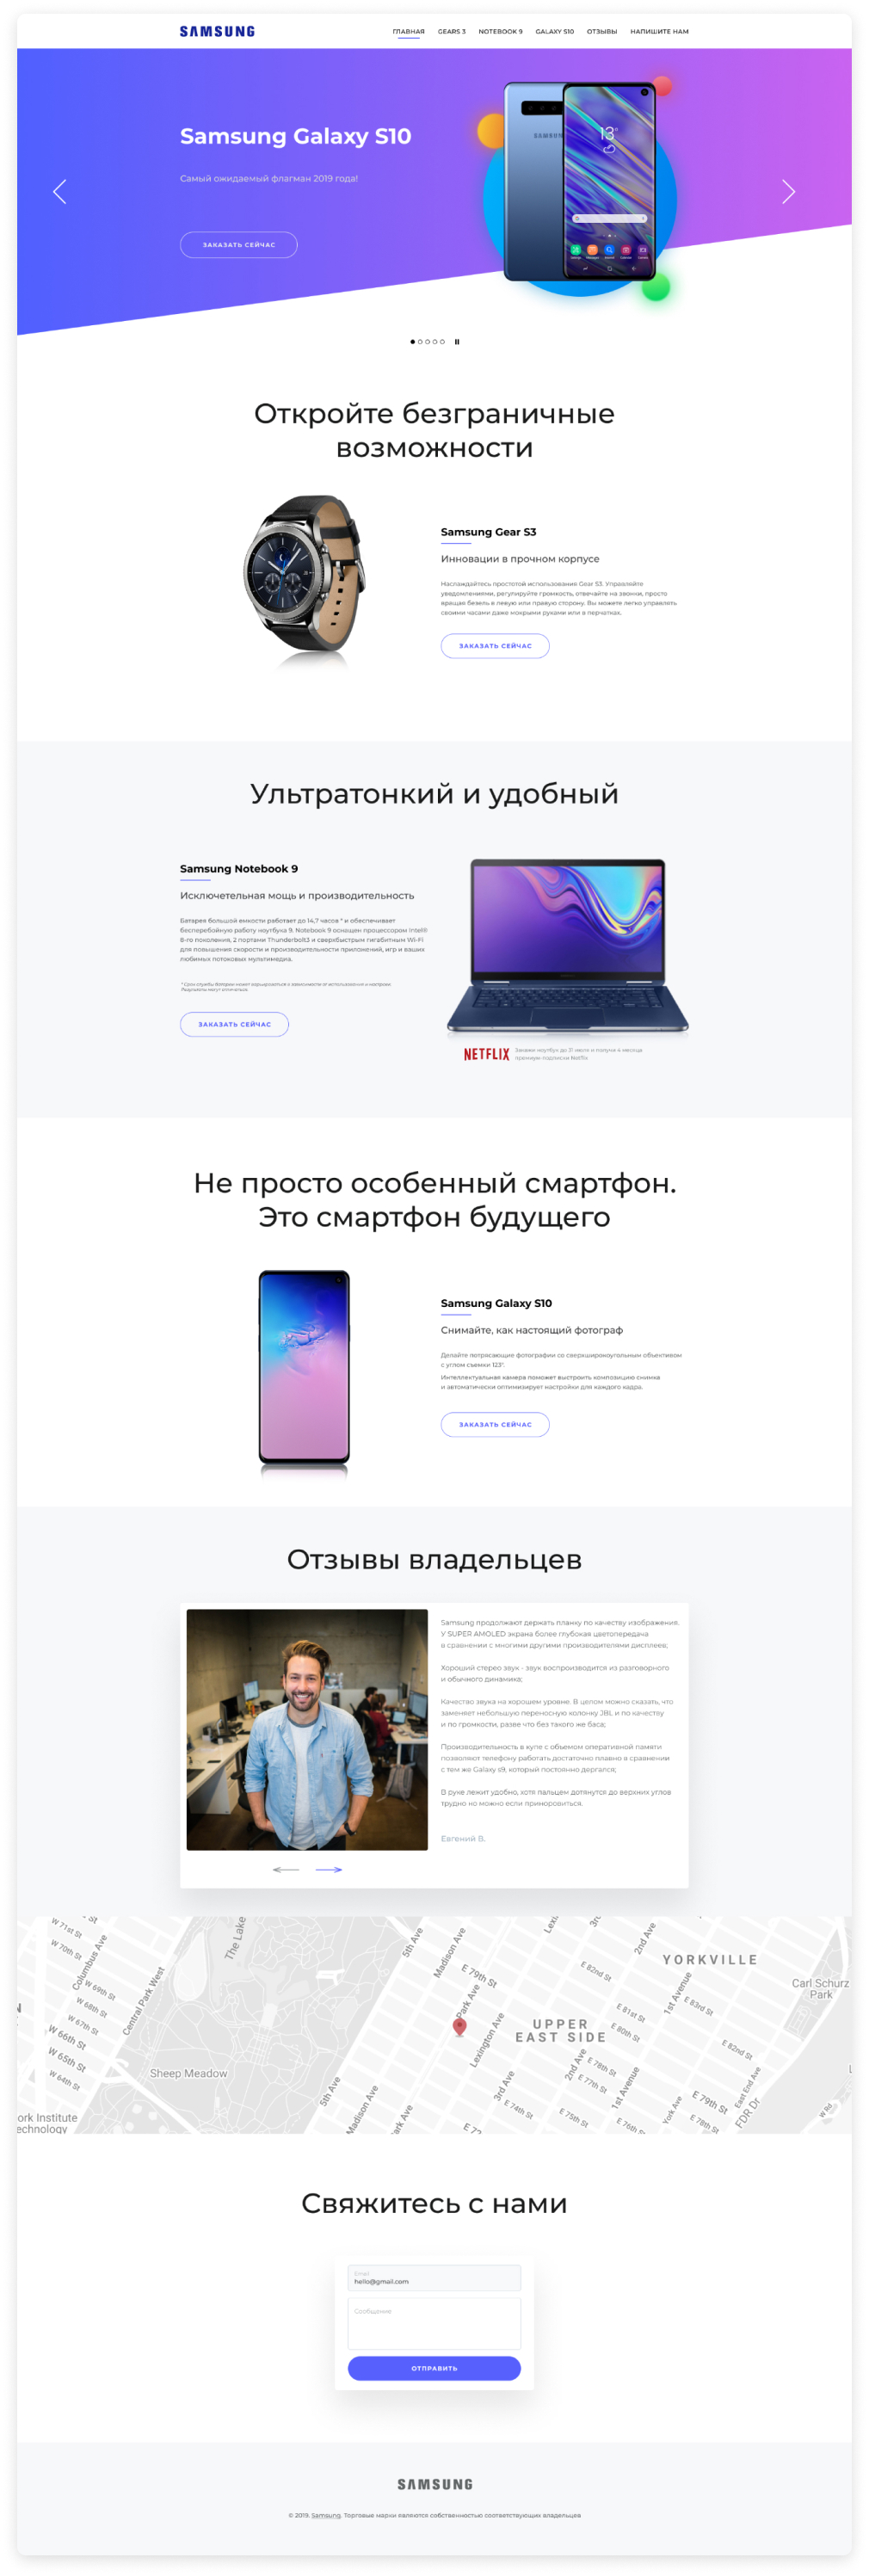 Дизайн Landing page для маркетинговой компании Samsung - главная 